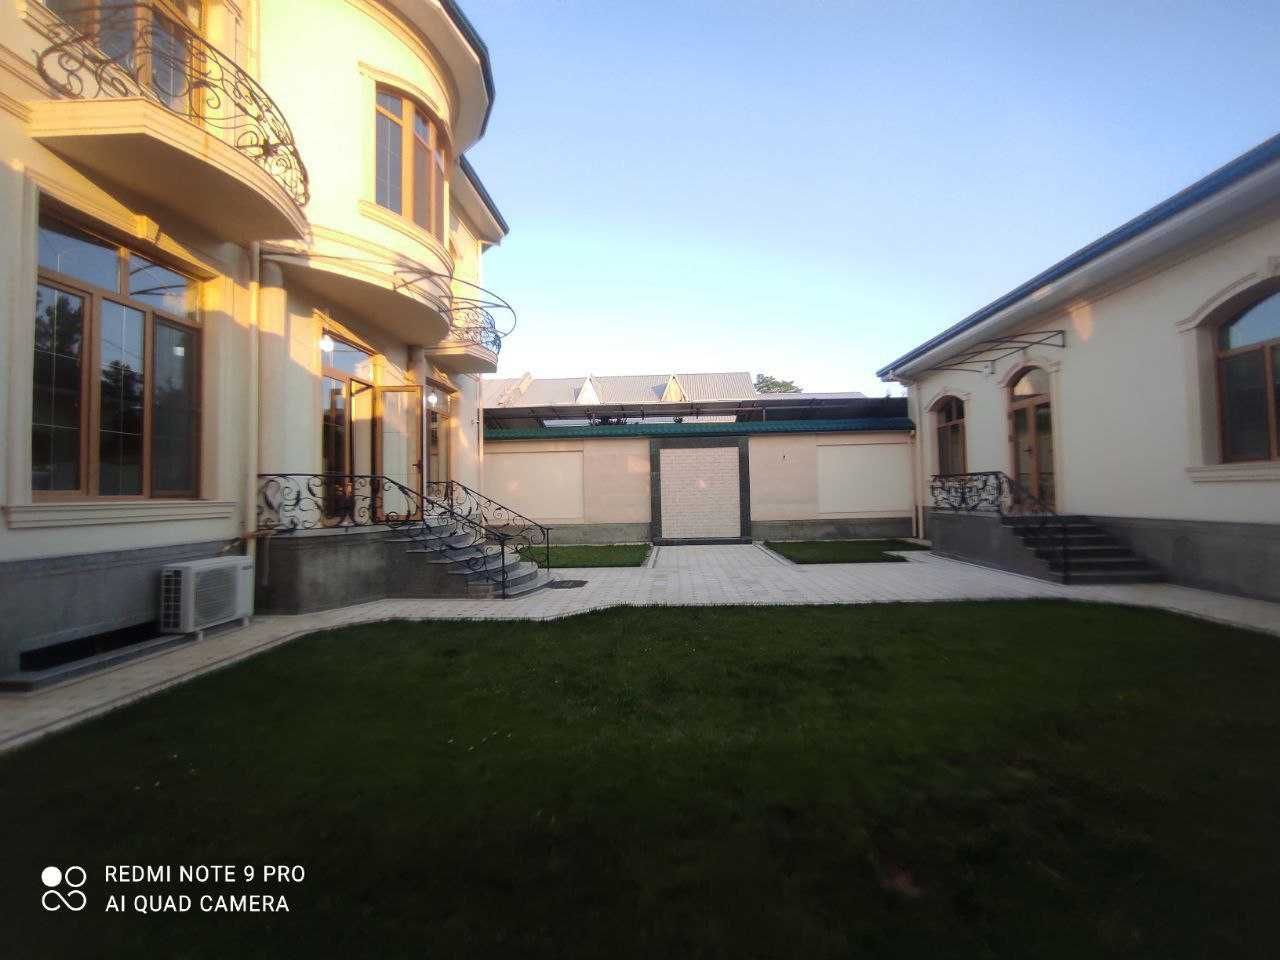 Продается дом на Никитина 8.5 соток 550кв.м